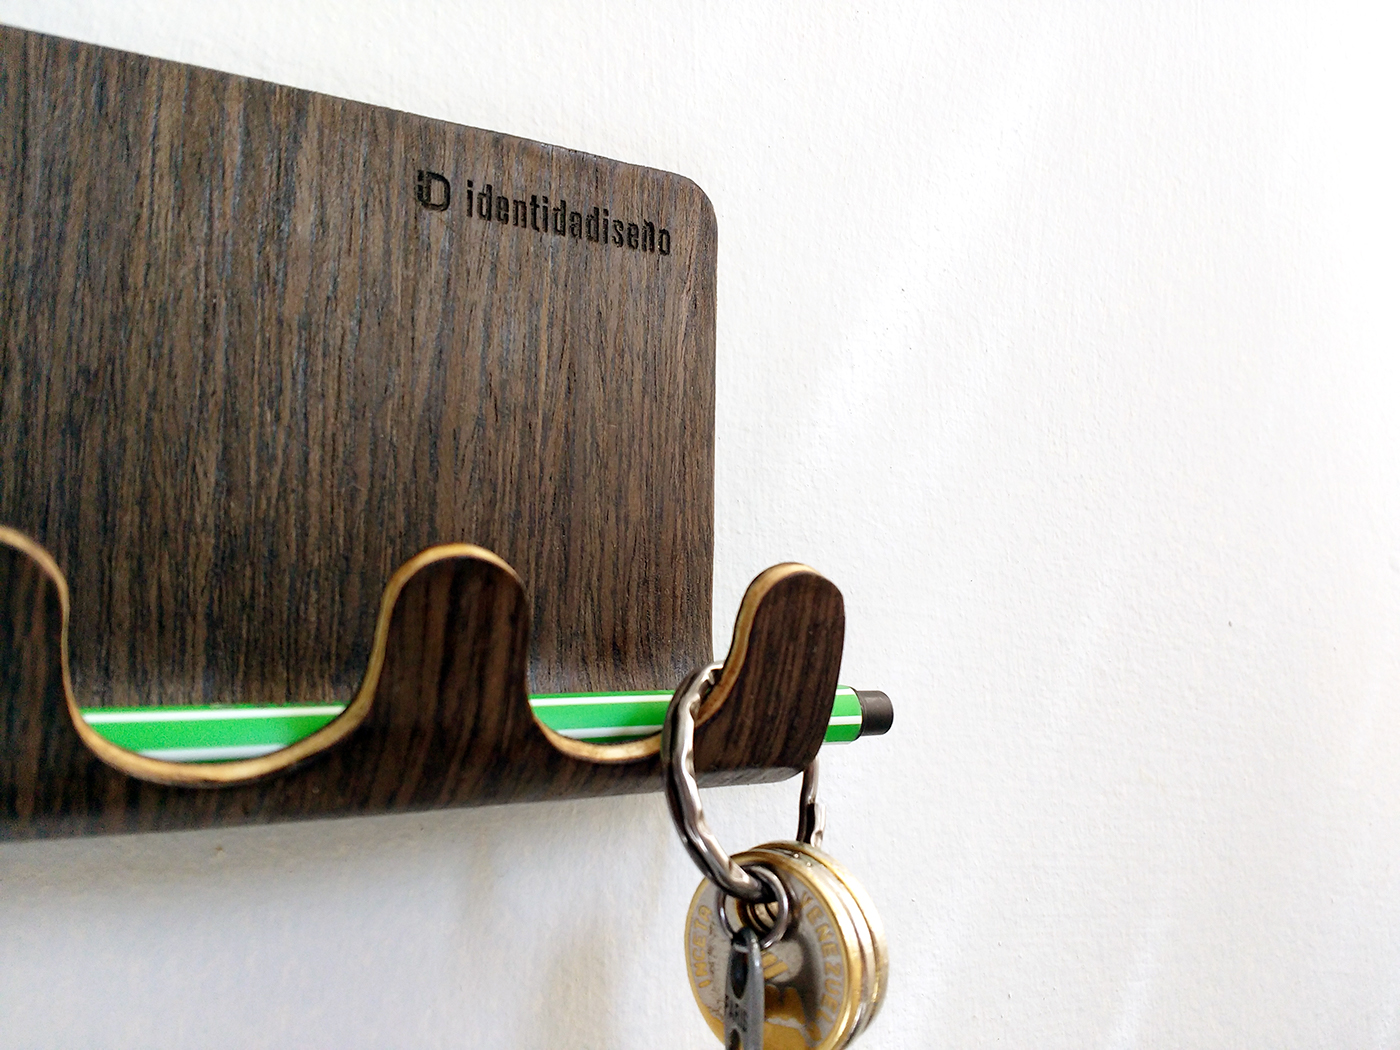 key holder bentwood wood design venezuela Venezuelan diseñovenezolano